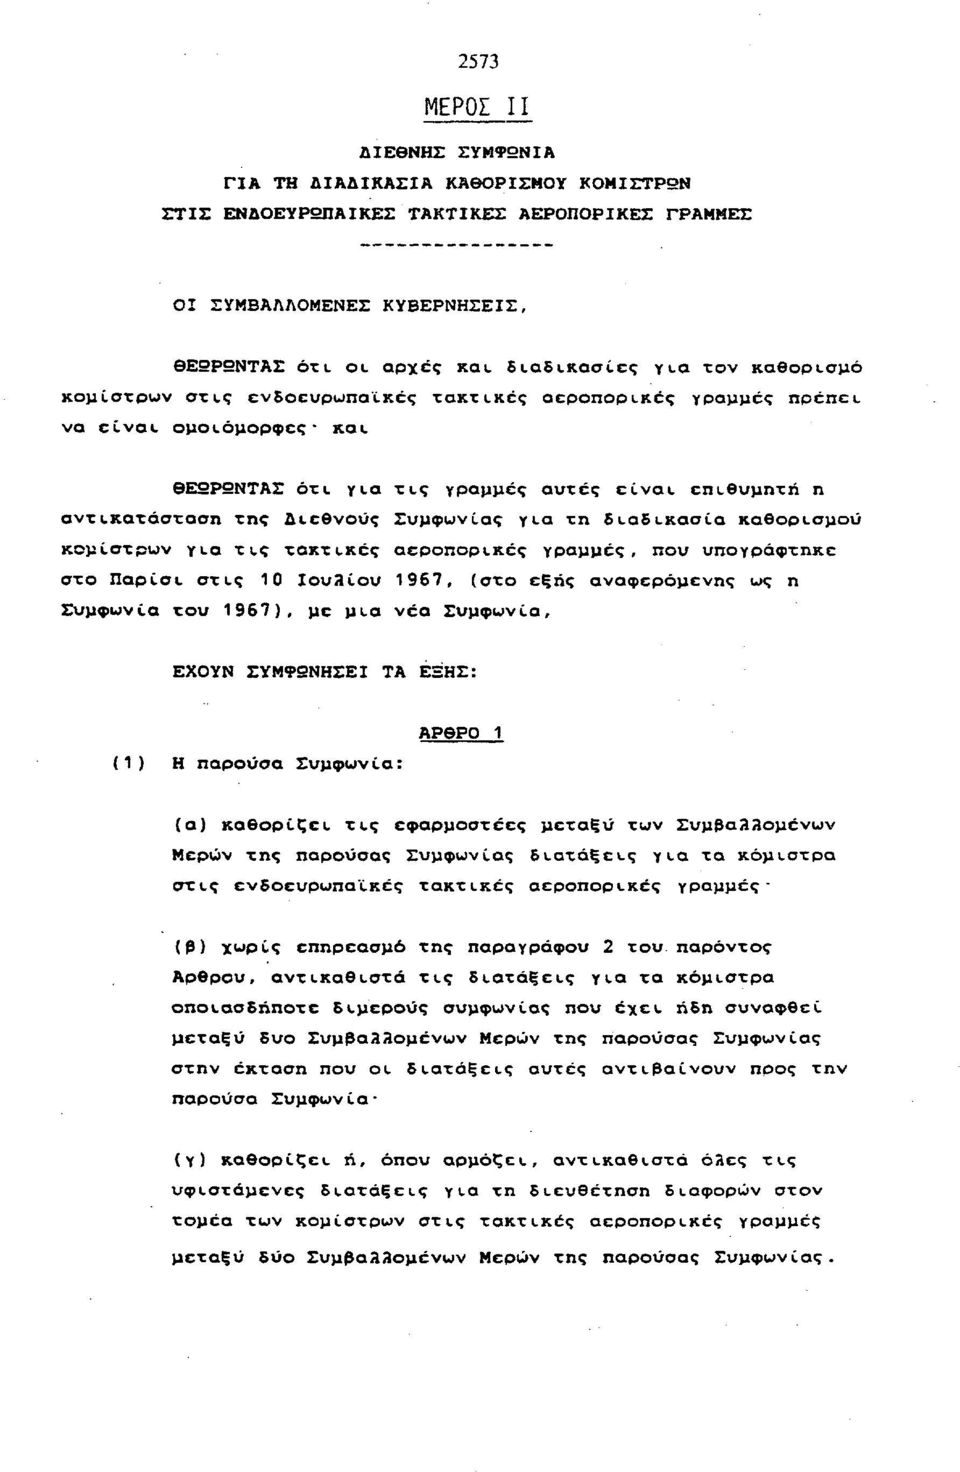 διαδικασία καθορισμού κομίστρων yea τ ις τακτικές αεροπορικές γραμμές, που υπογράφτηκε στο Παρίσι στις 10 Ιουλίου 1967, (στο εξής αναφερόμενης ως η Συμφωνία του 1967), με μια νέα Συμφωνία, ΕΧΟΥΝ